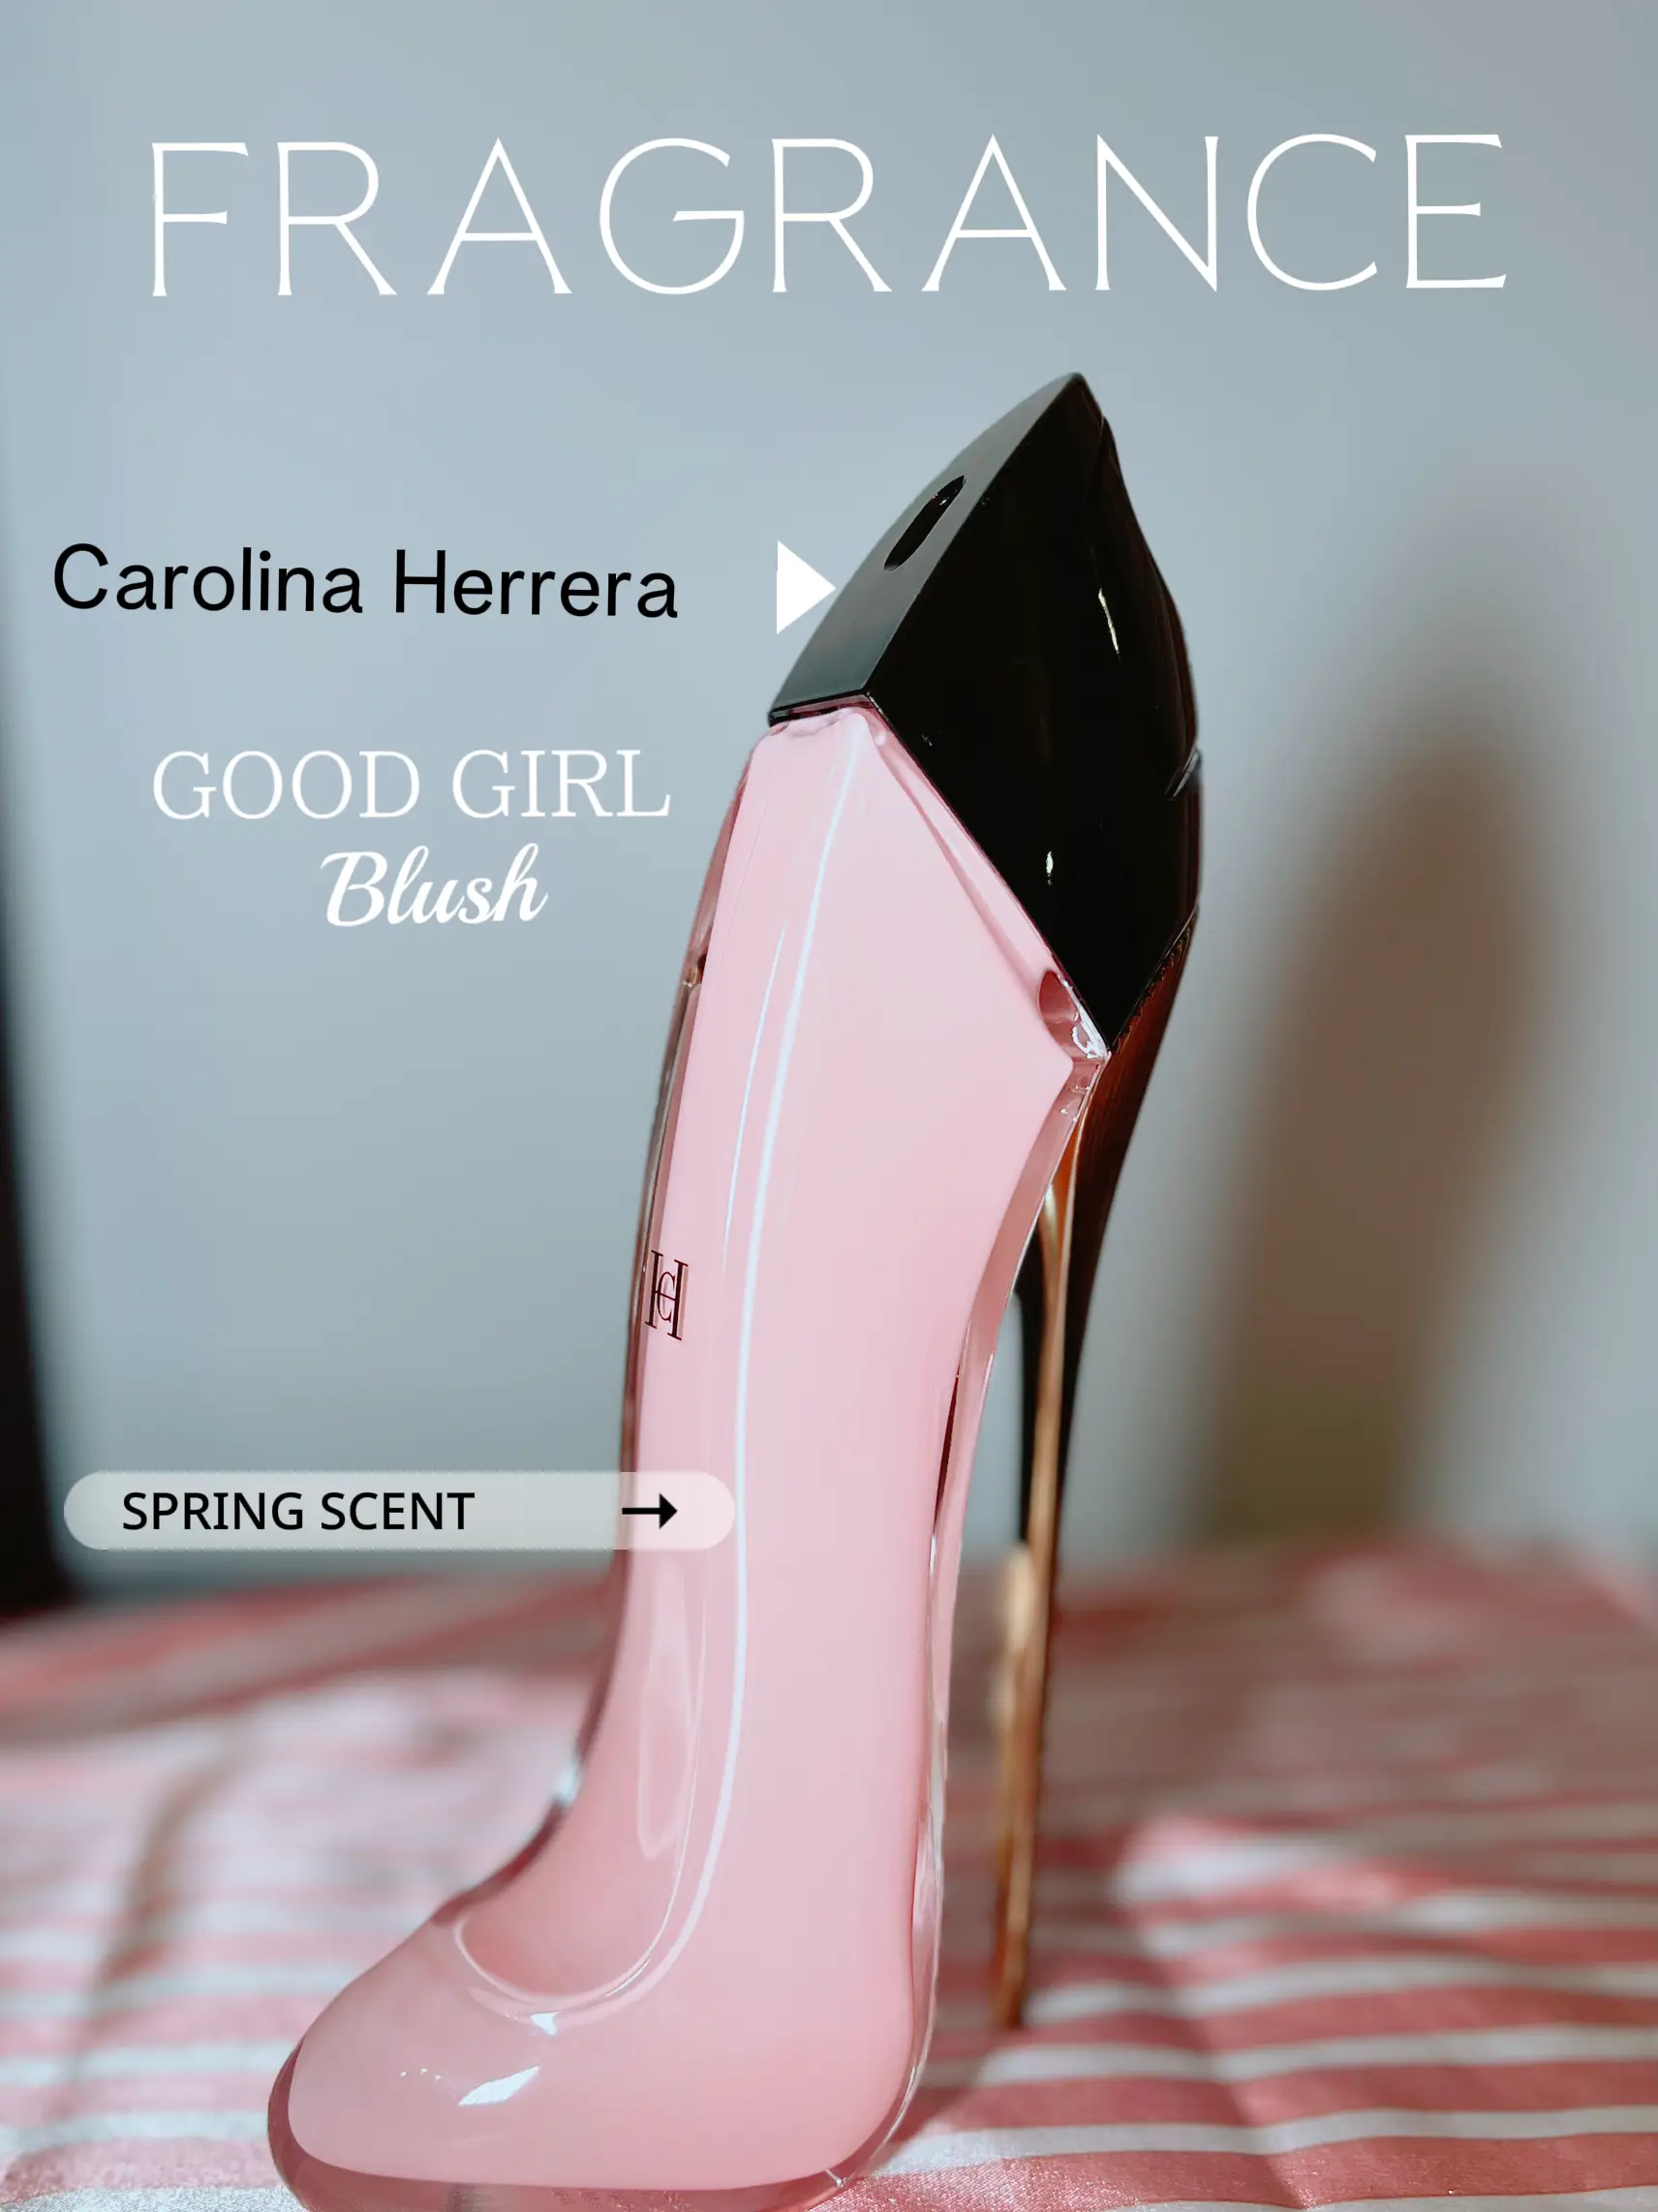 NEW CAROLINA HERRERA GOOD GIRL BLUSH PERFUME REVIEW